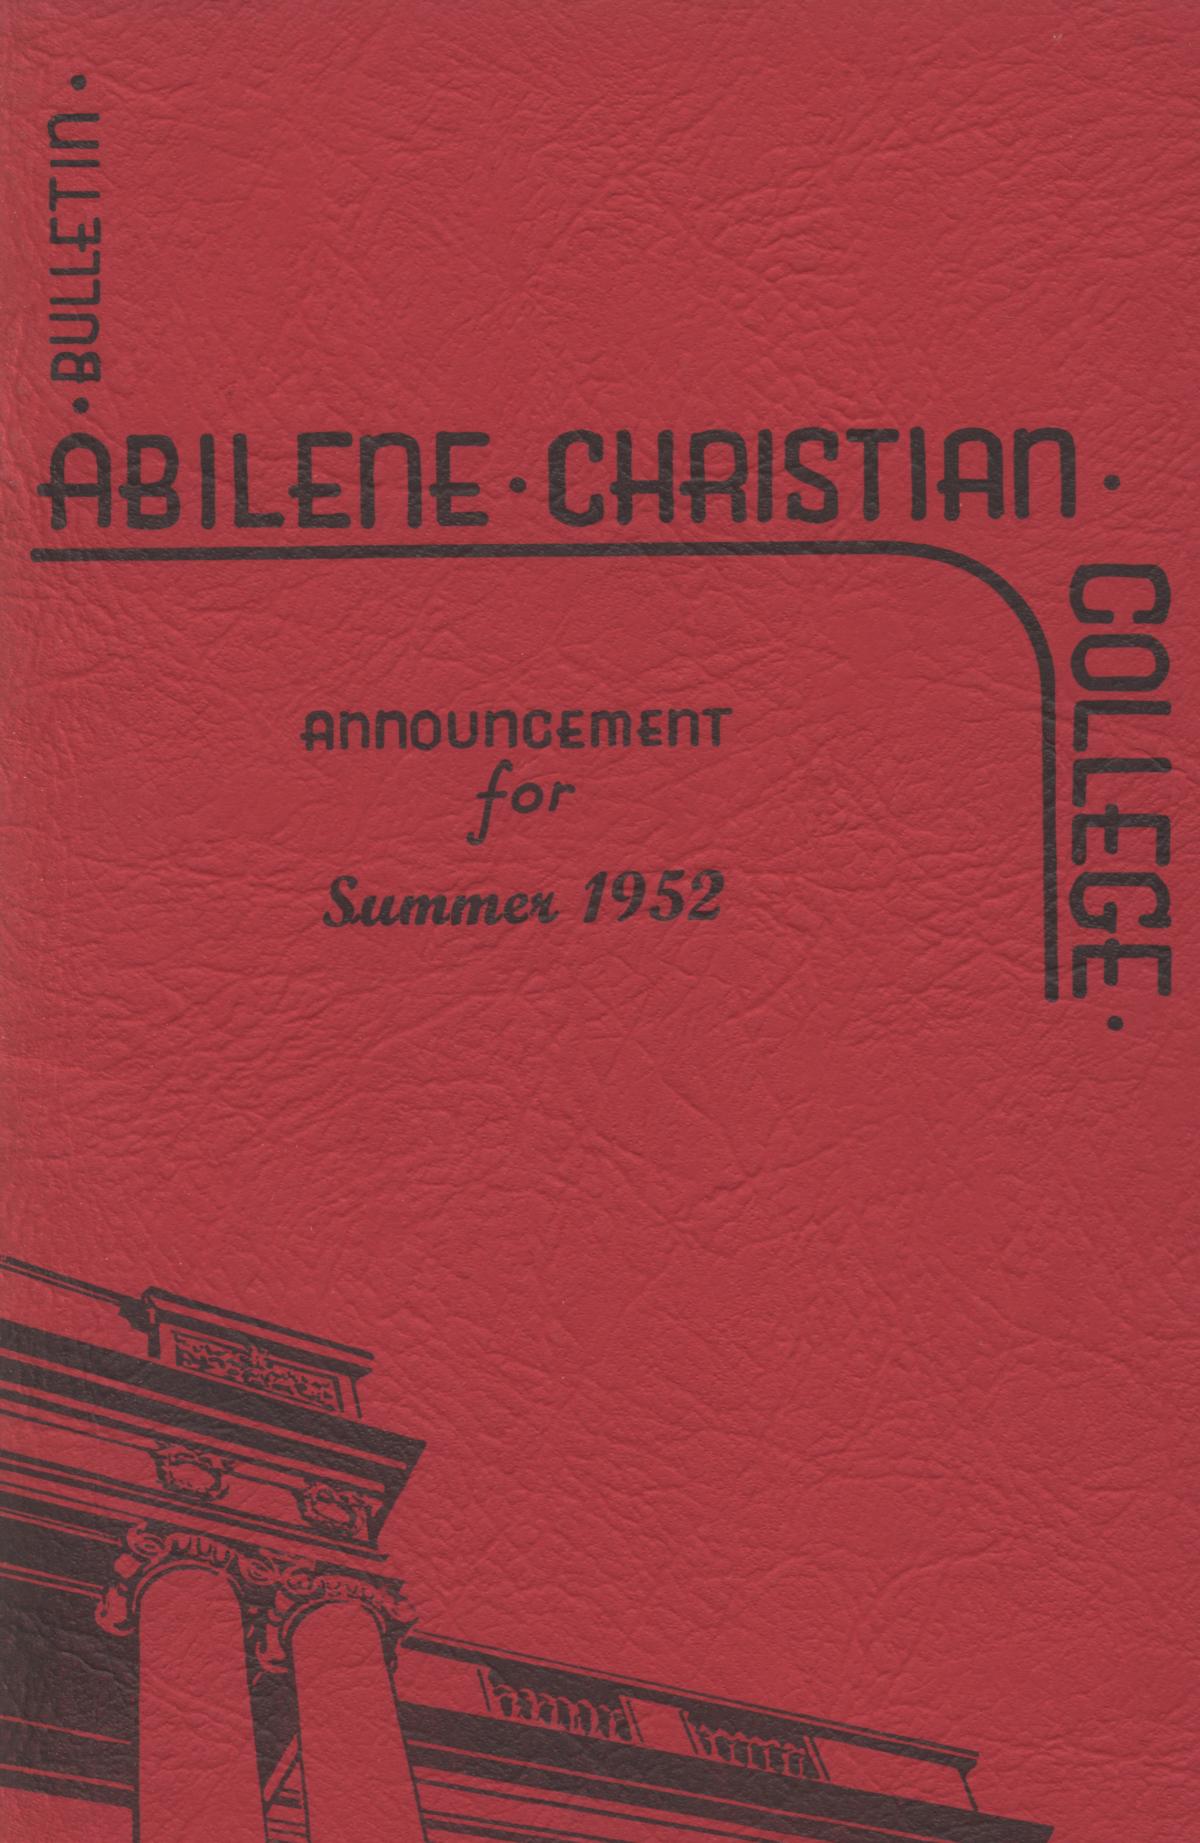 Catalog of Abilene Christian College, 1952
                                                
                                                    Front Cover
                                                